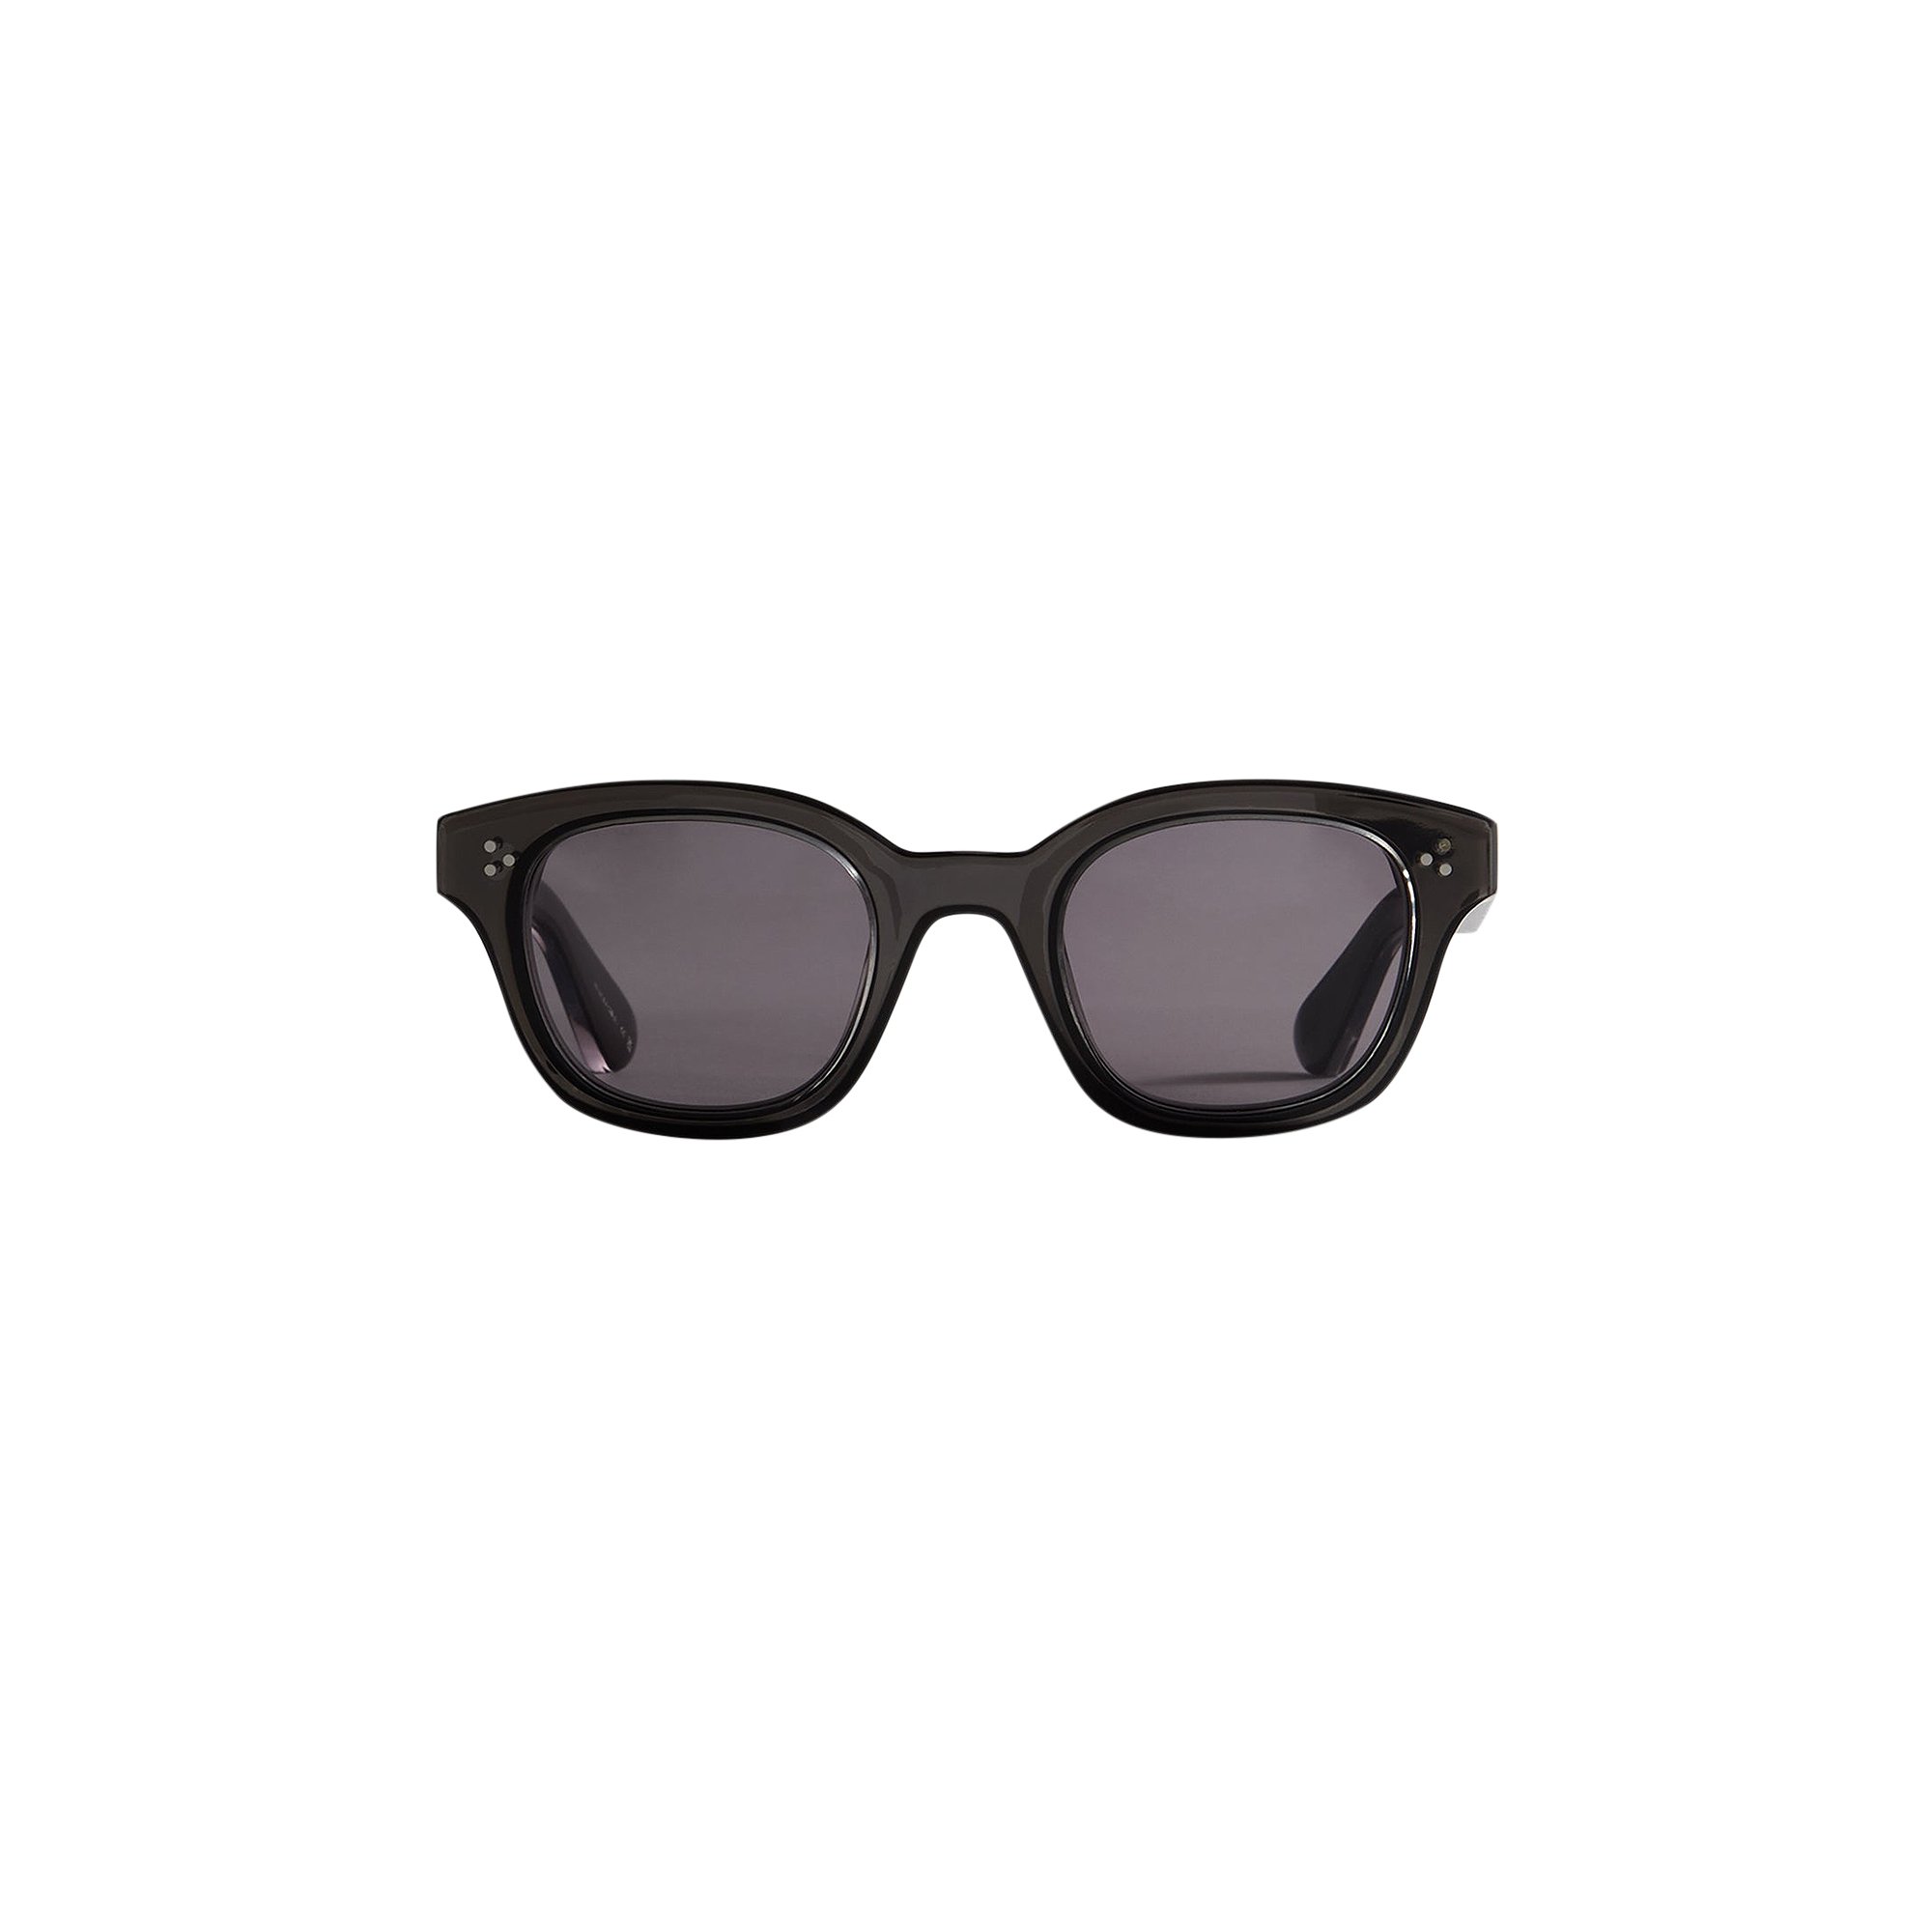 Buy Kith For Garrett Leight CO Gibson Sunglasses 'Noir' - 2145 47 ...